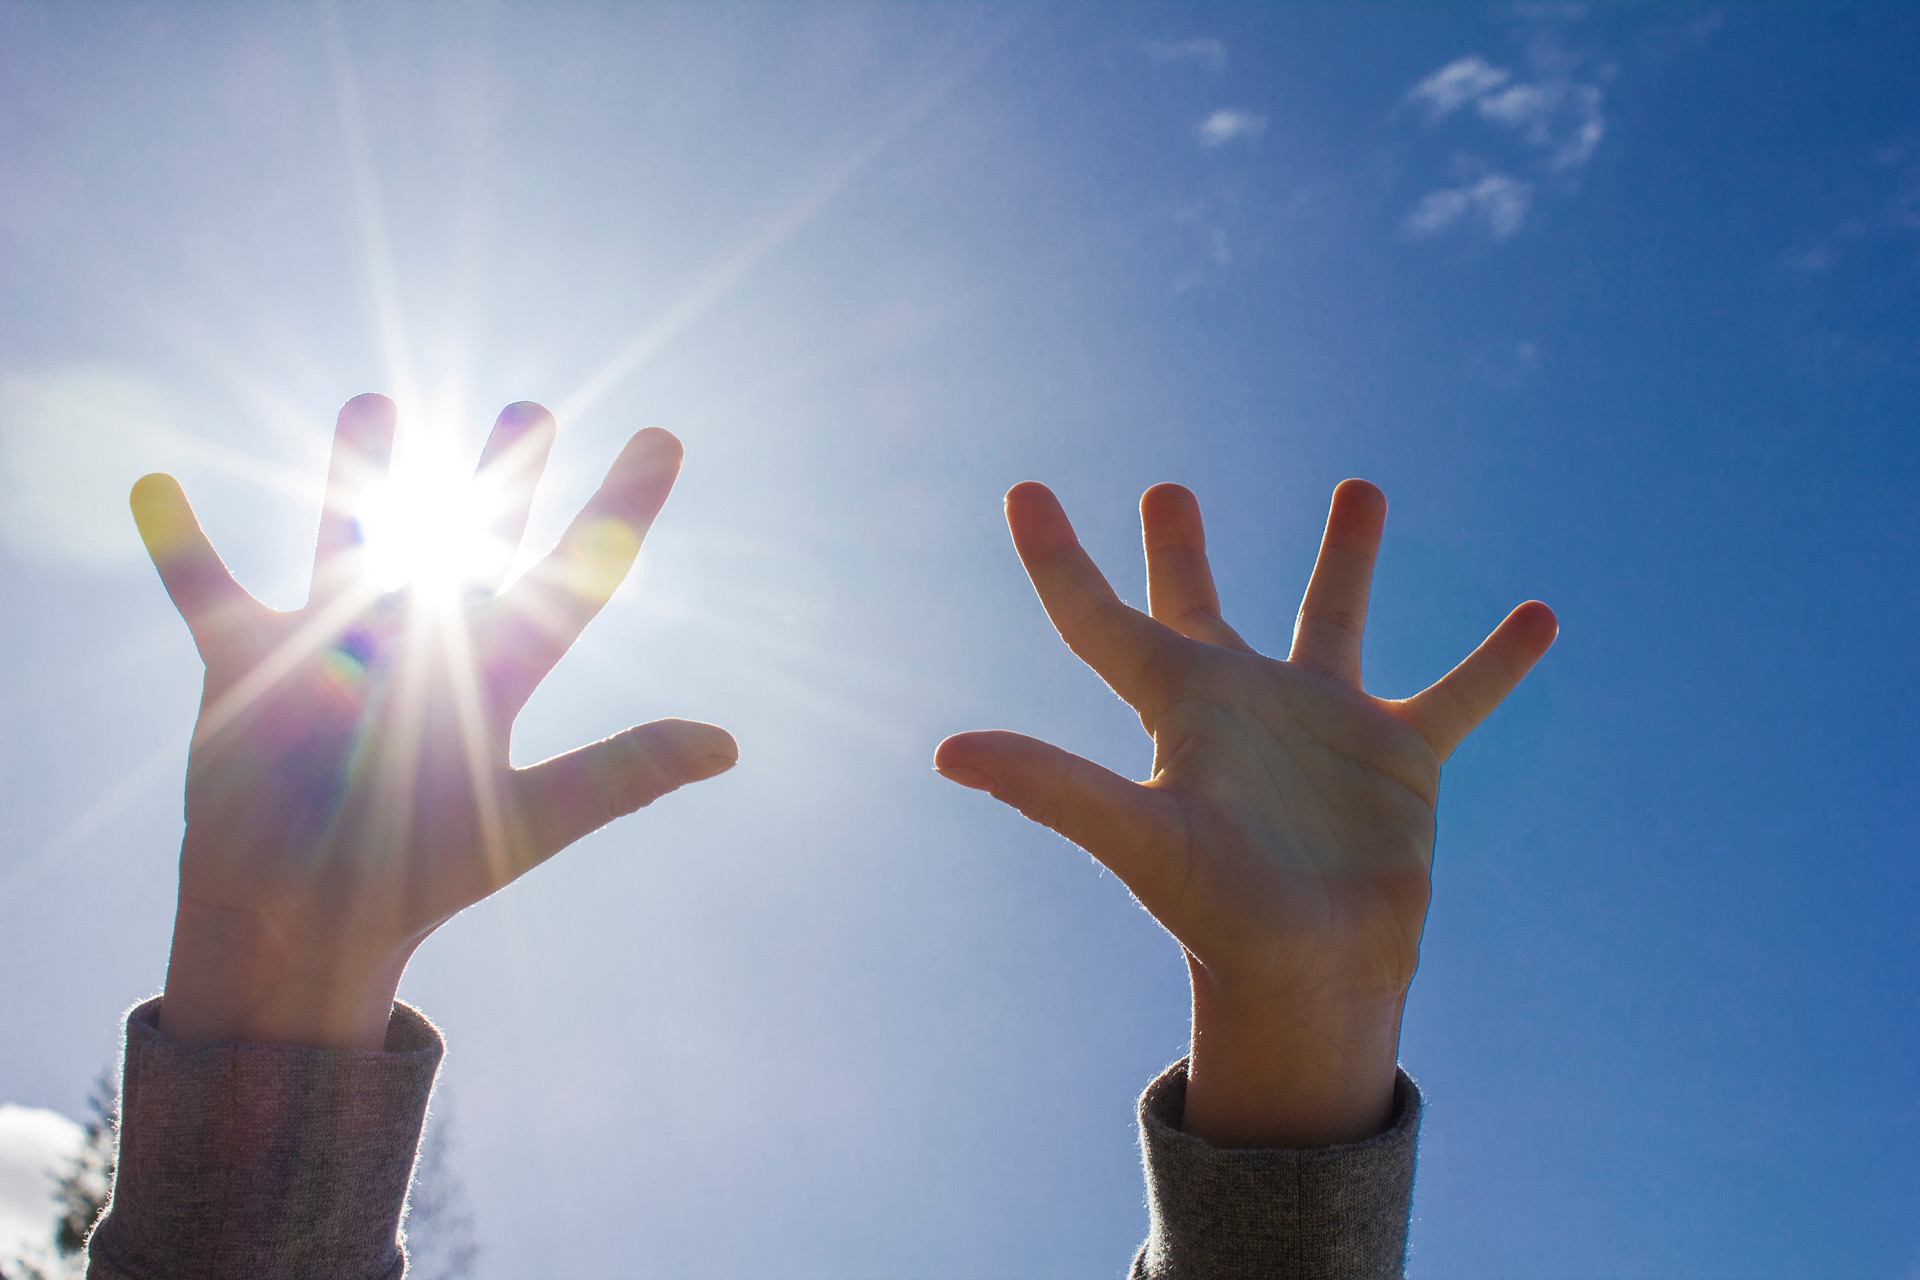 Barnhänder sträckta mot himlen med solstrålar mellan fingrarna.